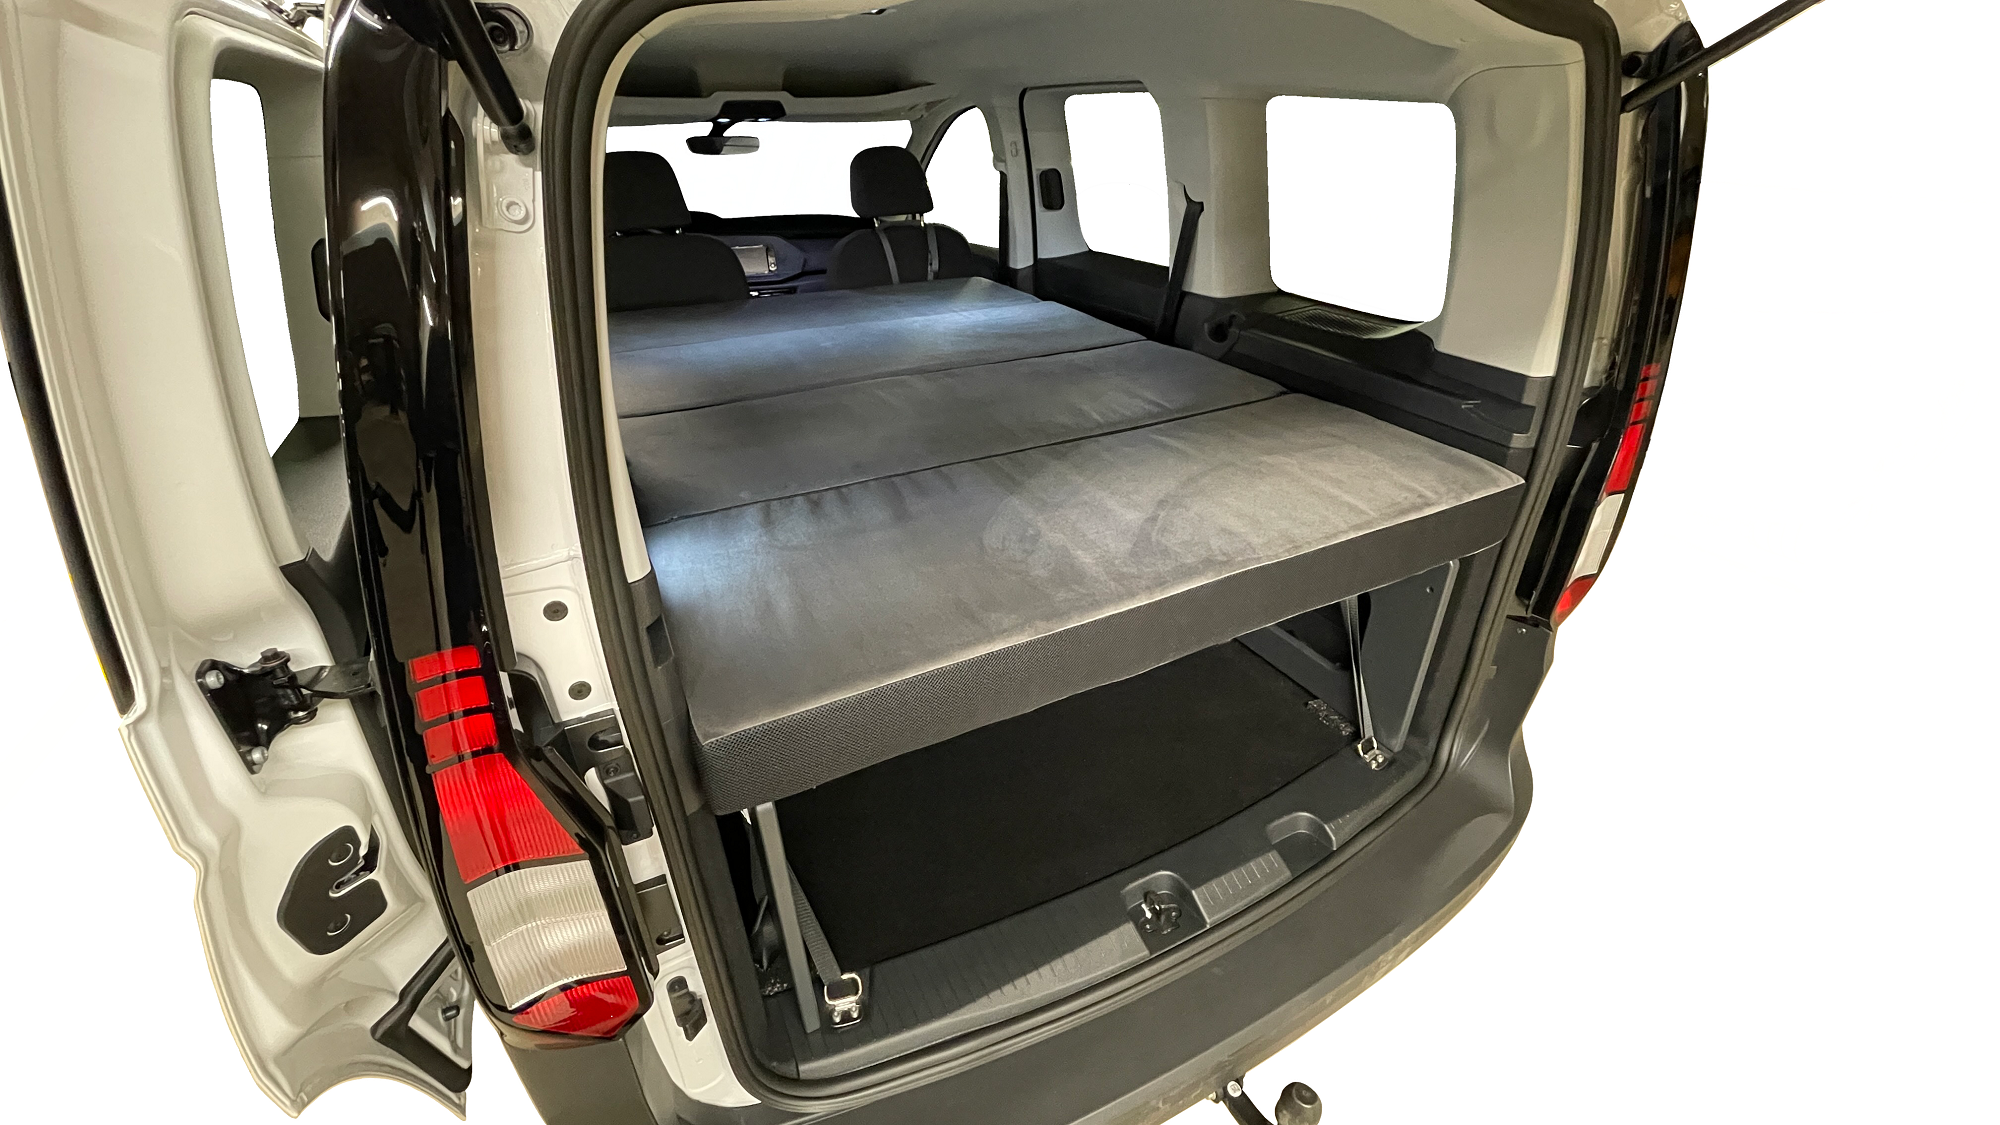 Ausbau- und Schlafsystem inkl. Matratze für VW Caddy und ähnliche Fahrzeuge  - Go Outside – Ihr Campingspezialist (Küchen, Ausbau, Zubehör)